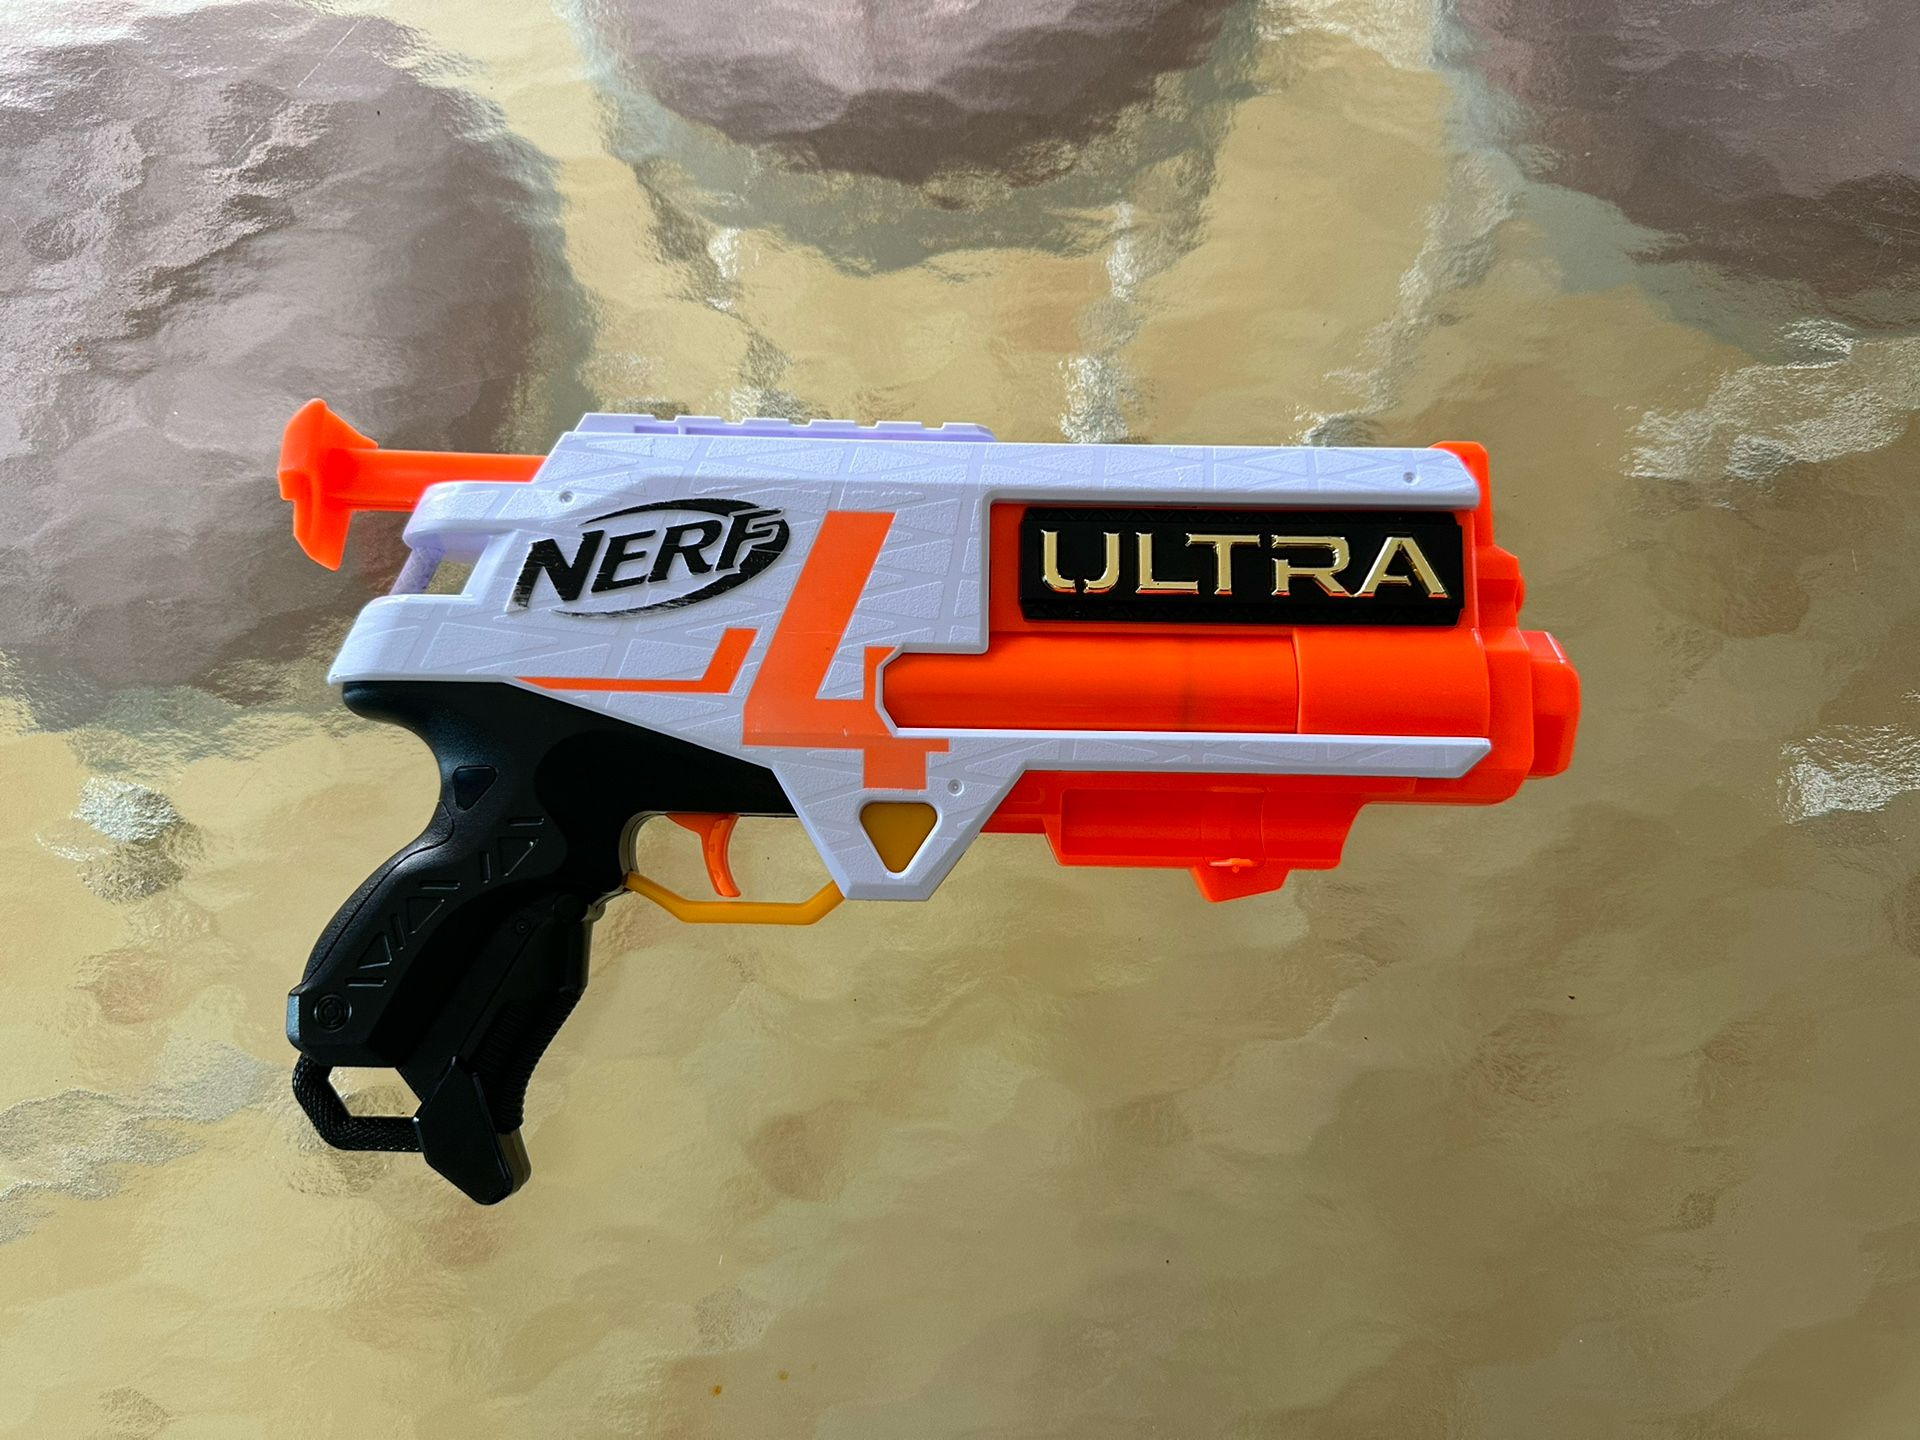  Nerf Ultra Pistol